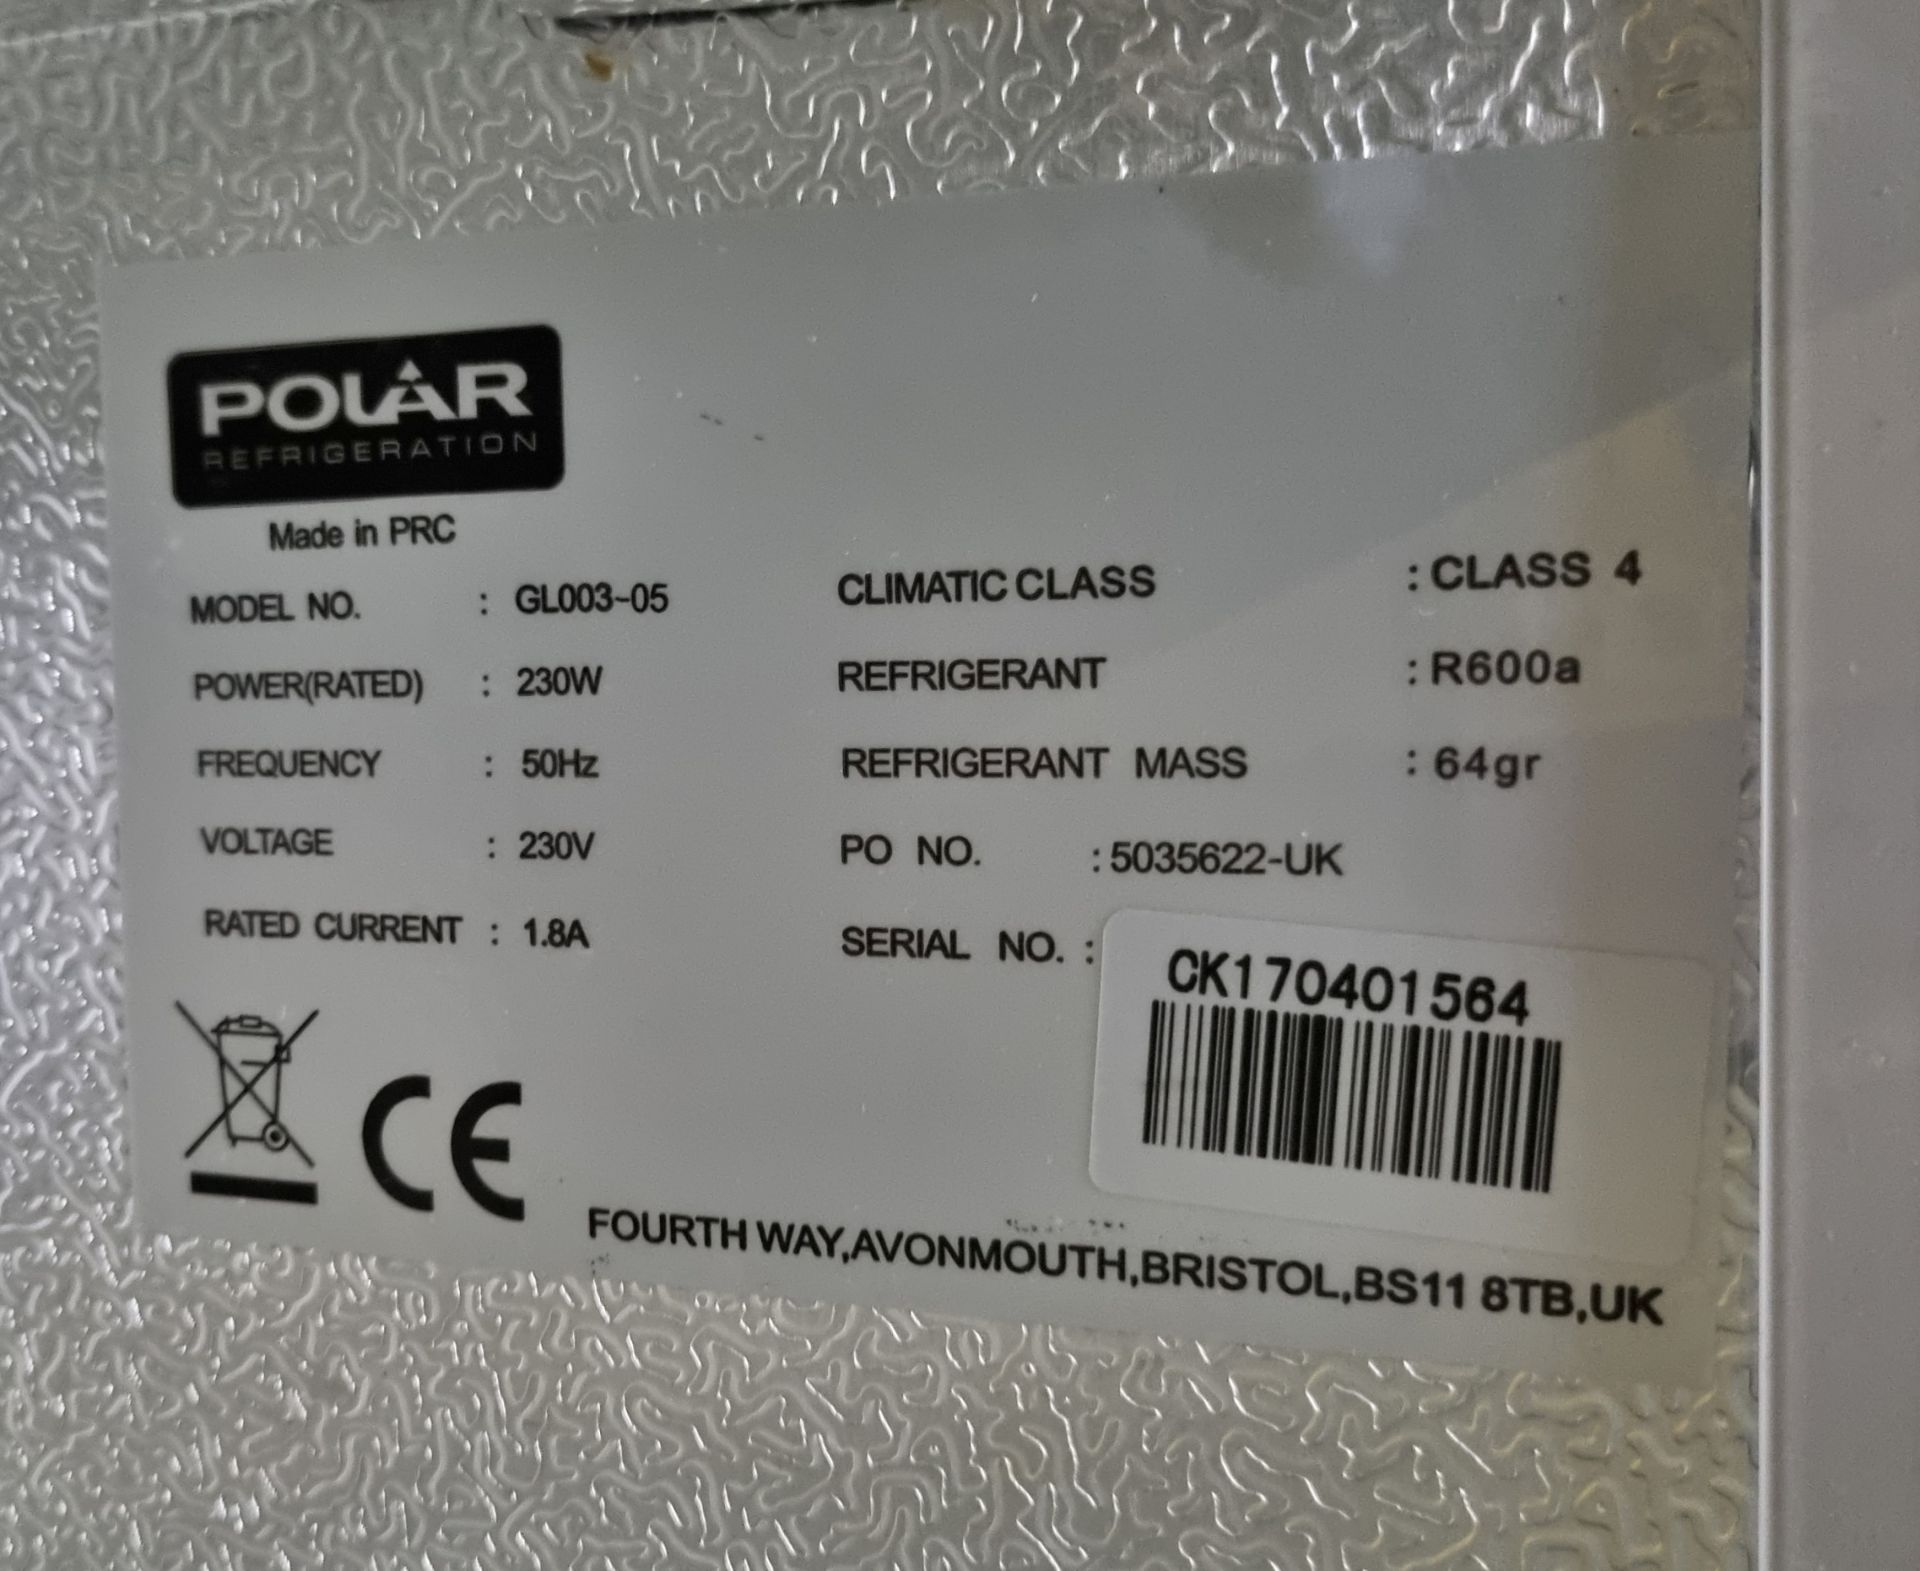 Polar GL003-05 Undercounter double sliding glass door bottle cooler - 230V 50Hz - Image 4 of 5